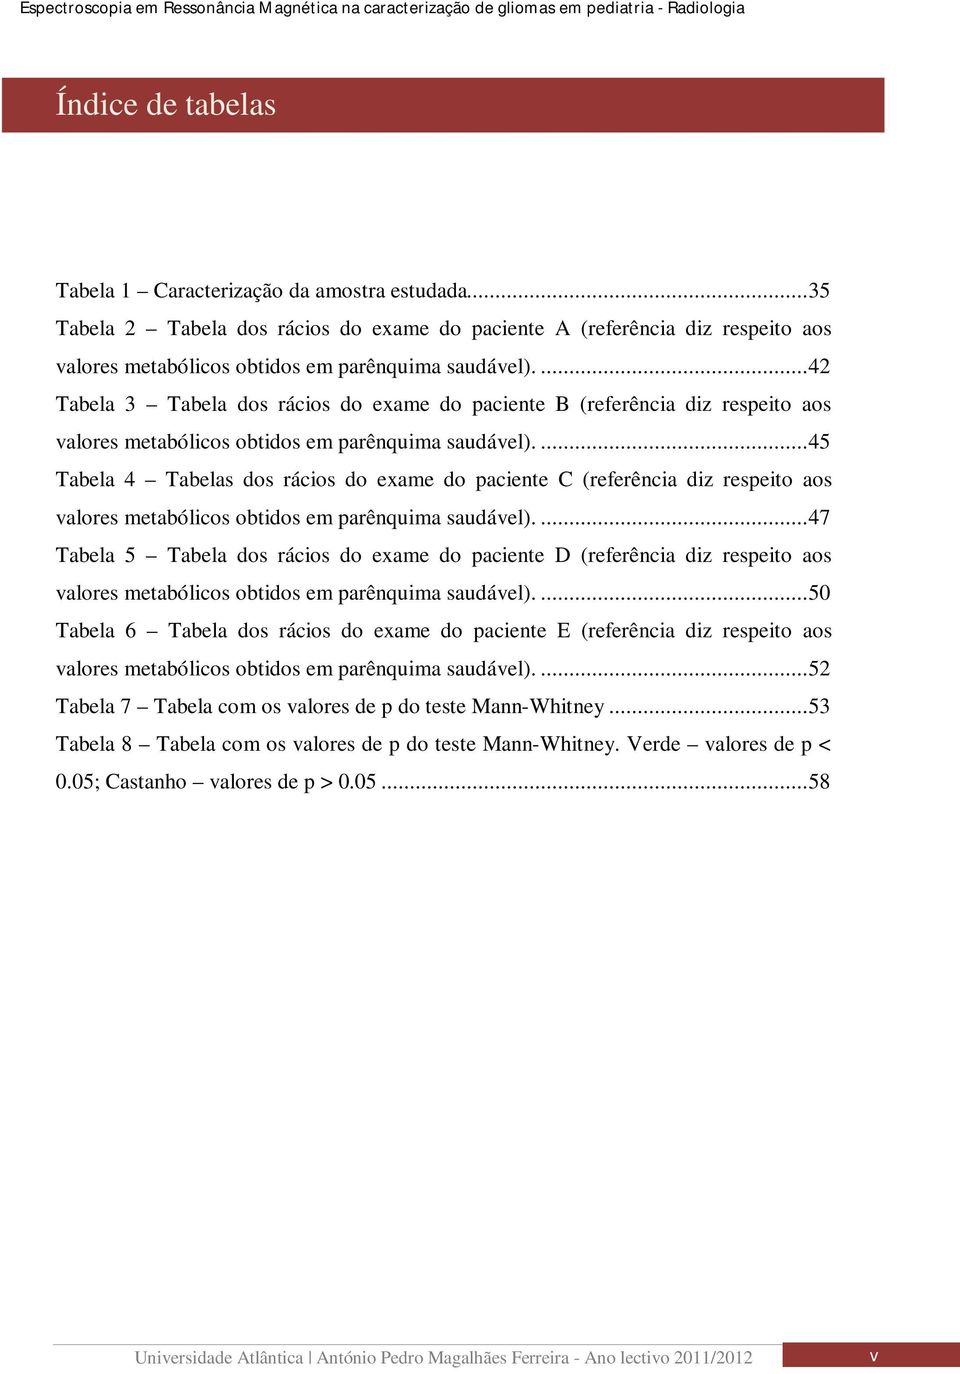 ... 45 Tabela 4 Tabelas dos rácios do exame do paciente C (referência diz respeito aos valores metabólicos obtidos em parênquima saudável).